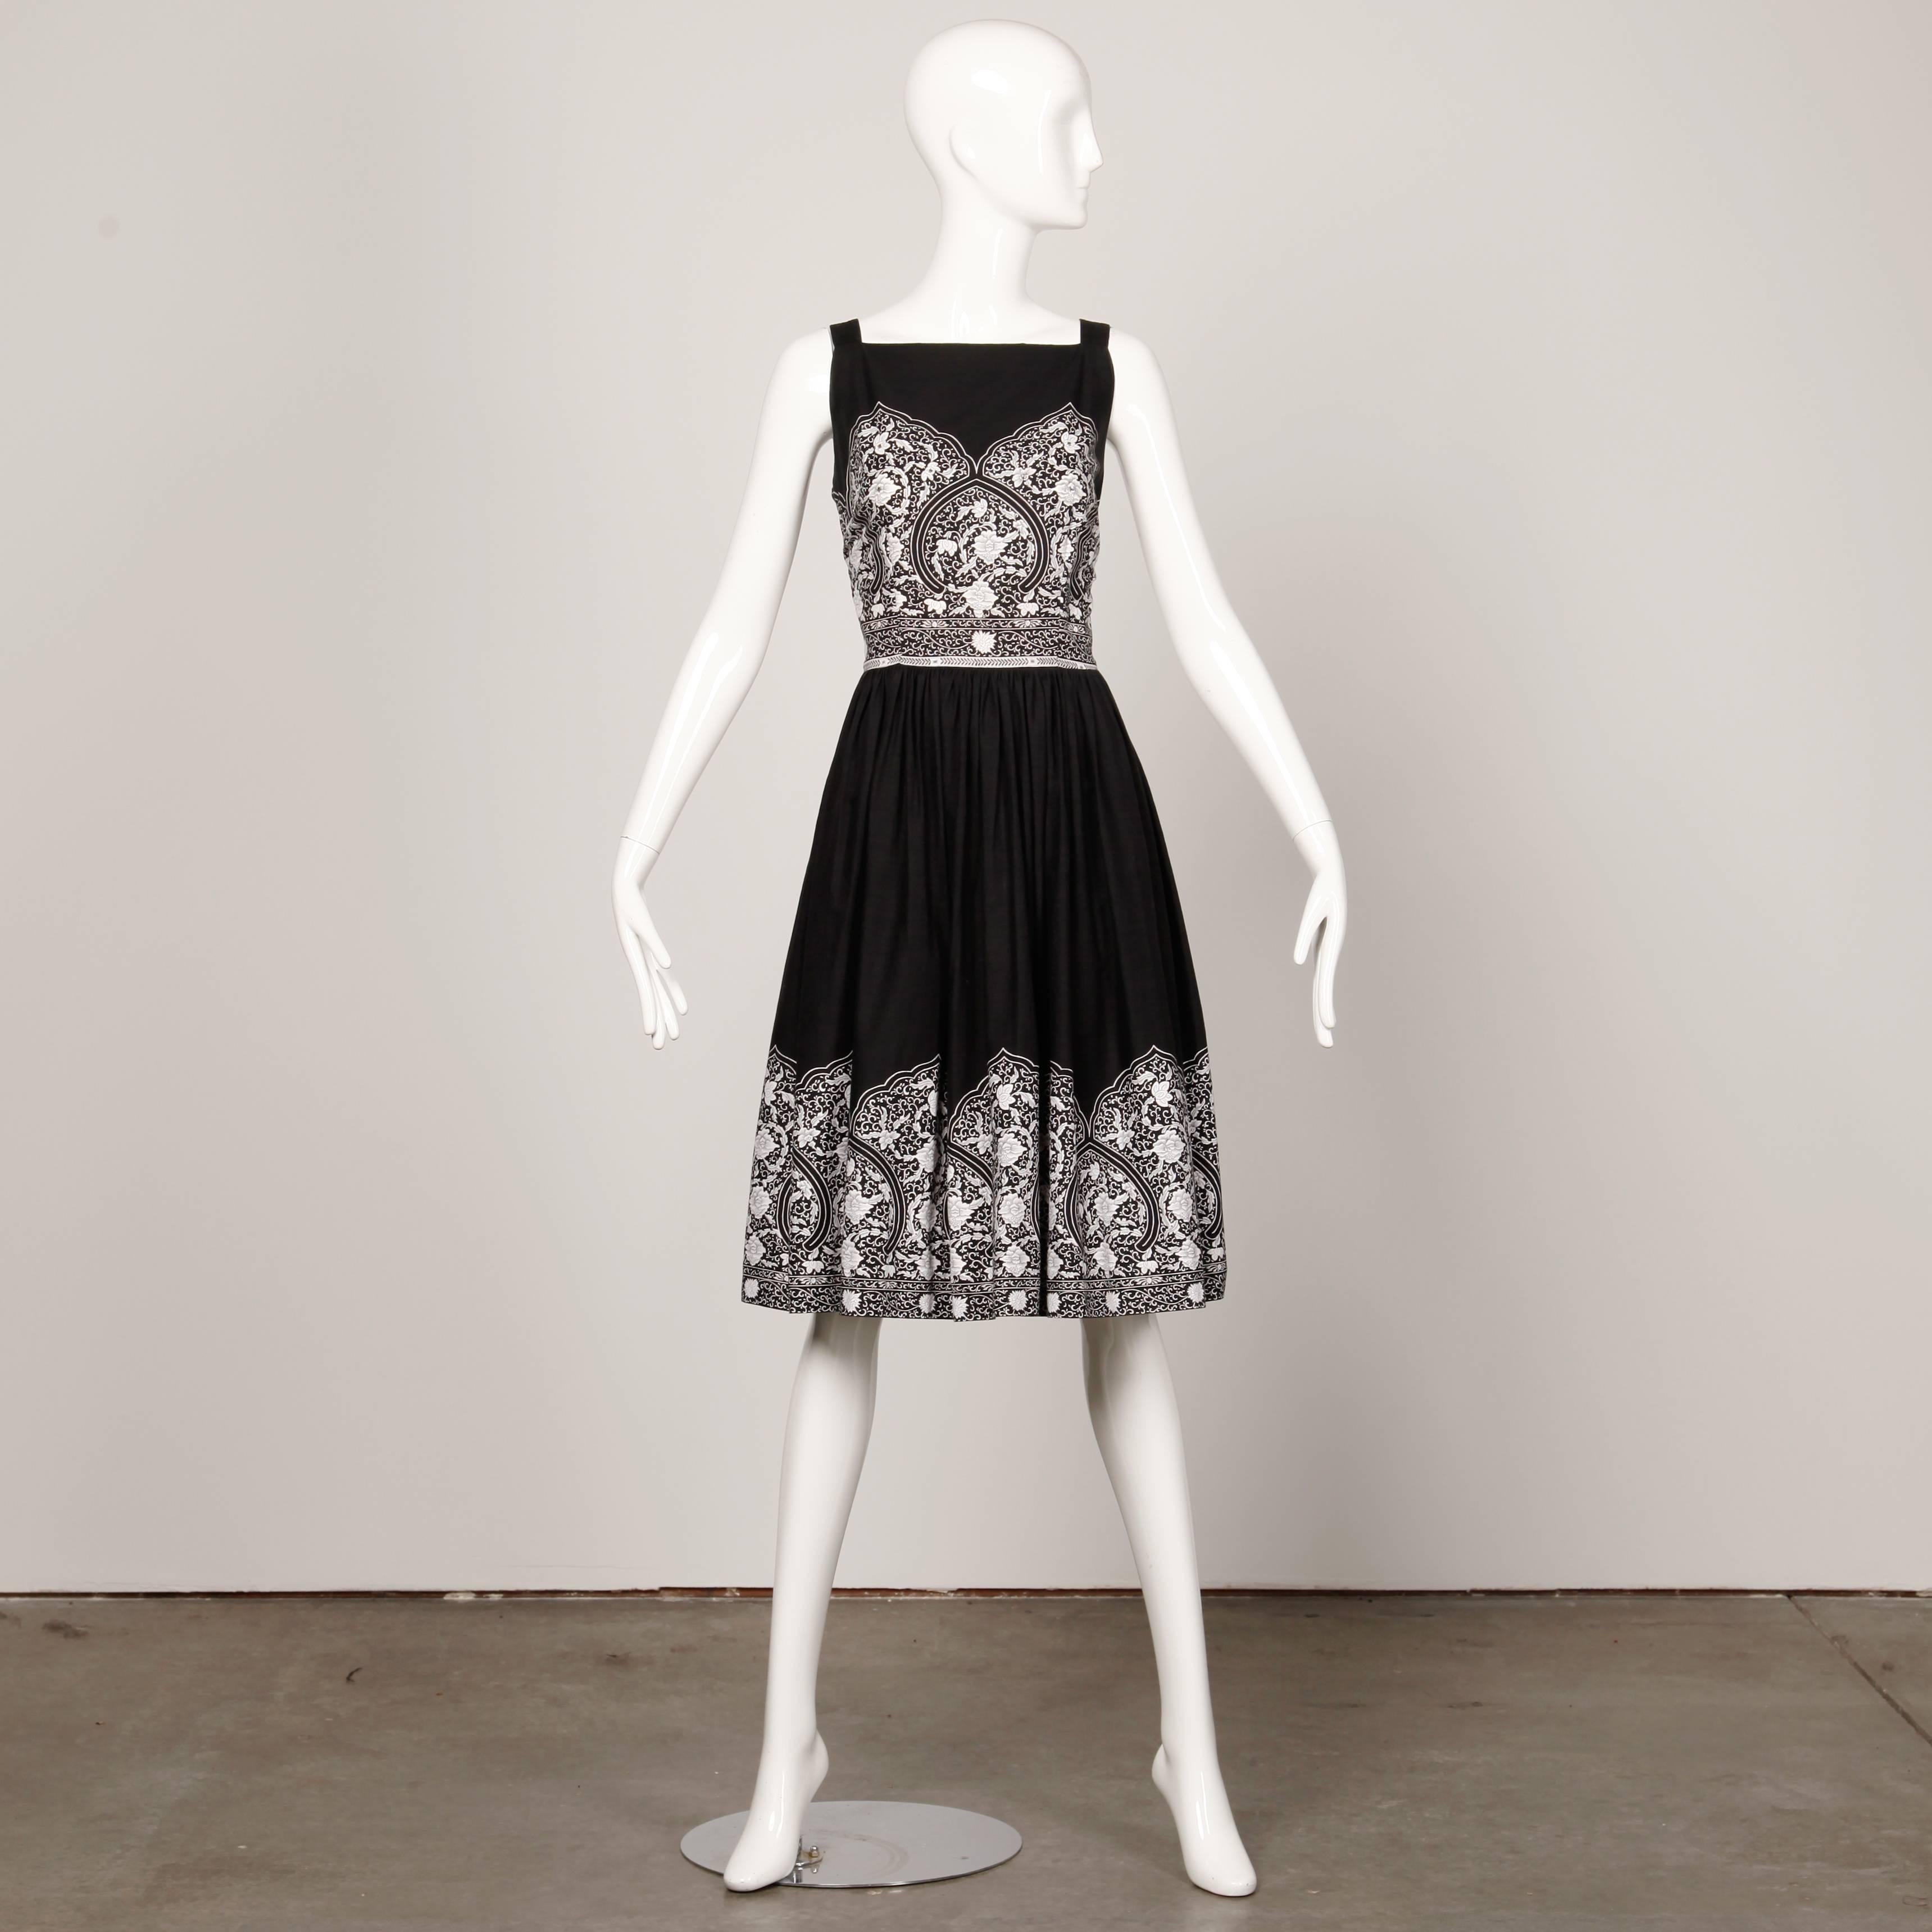 Ravissante robe de patio vintage des années 1950 en coton noir et blanc. Détails en strass sertis et jupe complète. Non doublée, avec une fermeture éclair métallique sur le côté. Correspond à une taille moyenne moderne. Le buste mesure 38